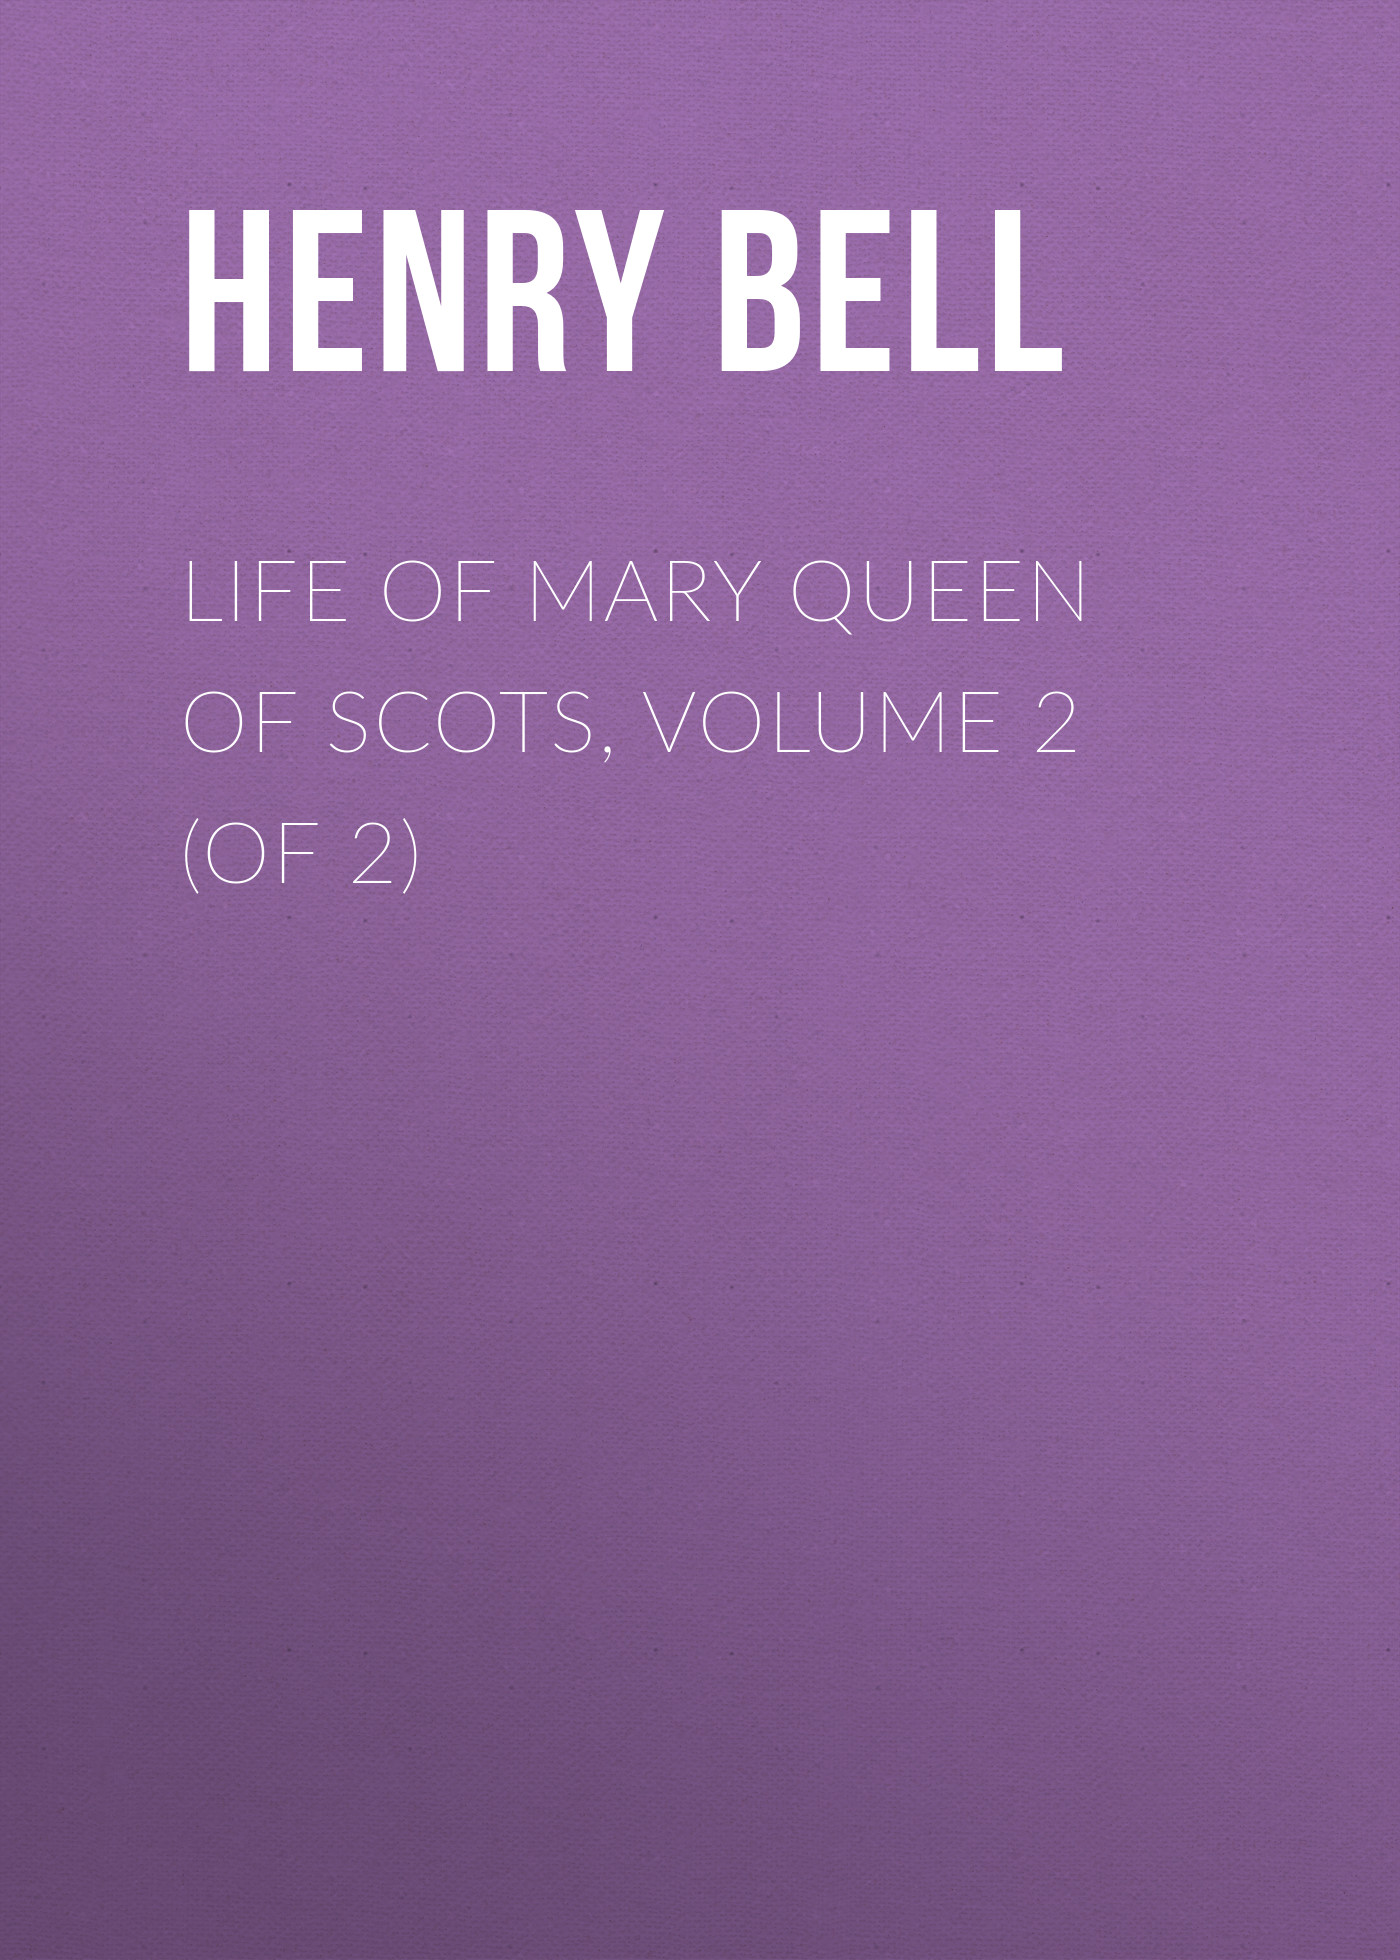 Книга Life of Mary Queen of Scots, Volume 2 (of 2) из серии , созданная Henry Bell, может относится к жанру Зарубежная старинная литература, Зарубежная классика. Стоимость электронной книги Life of Mary Queen of Scots, Volume 2 (of 2) с идентификатором 24168412 составляет 0.90 руб.